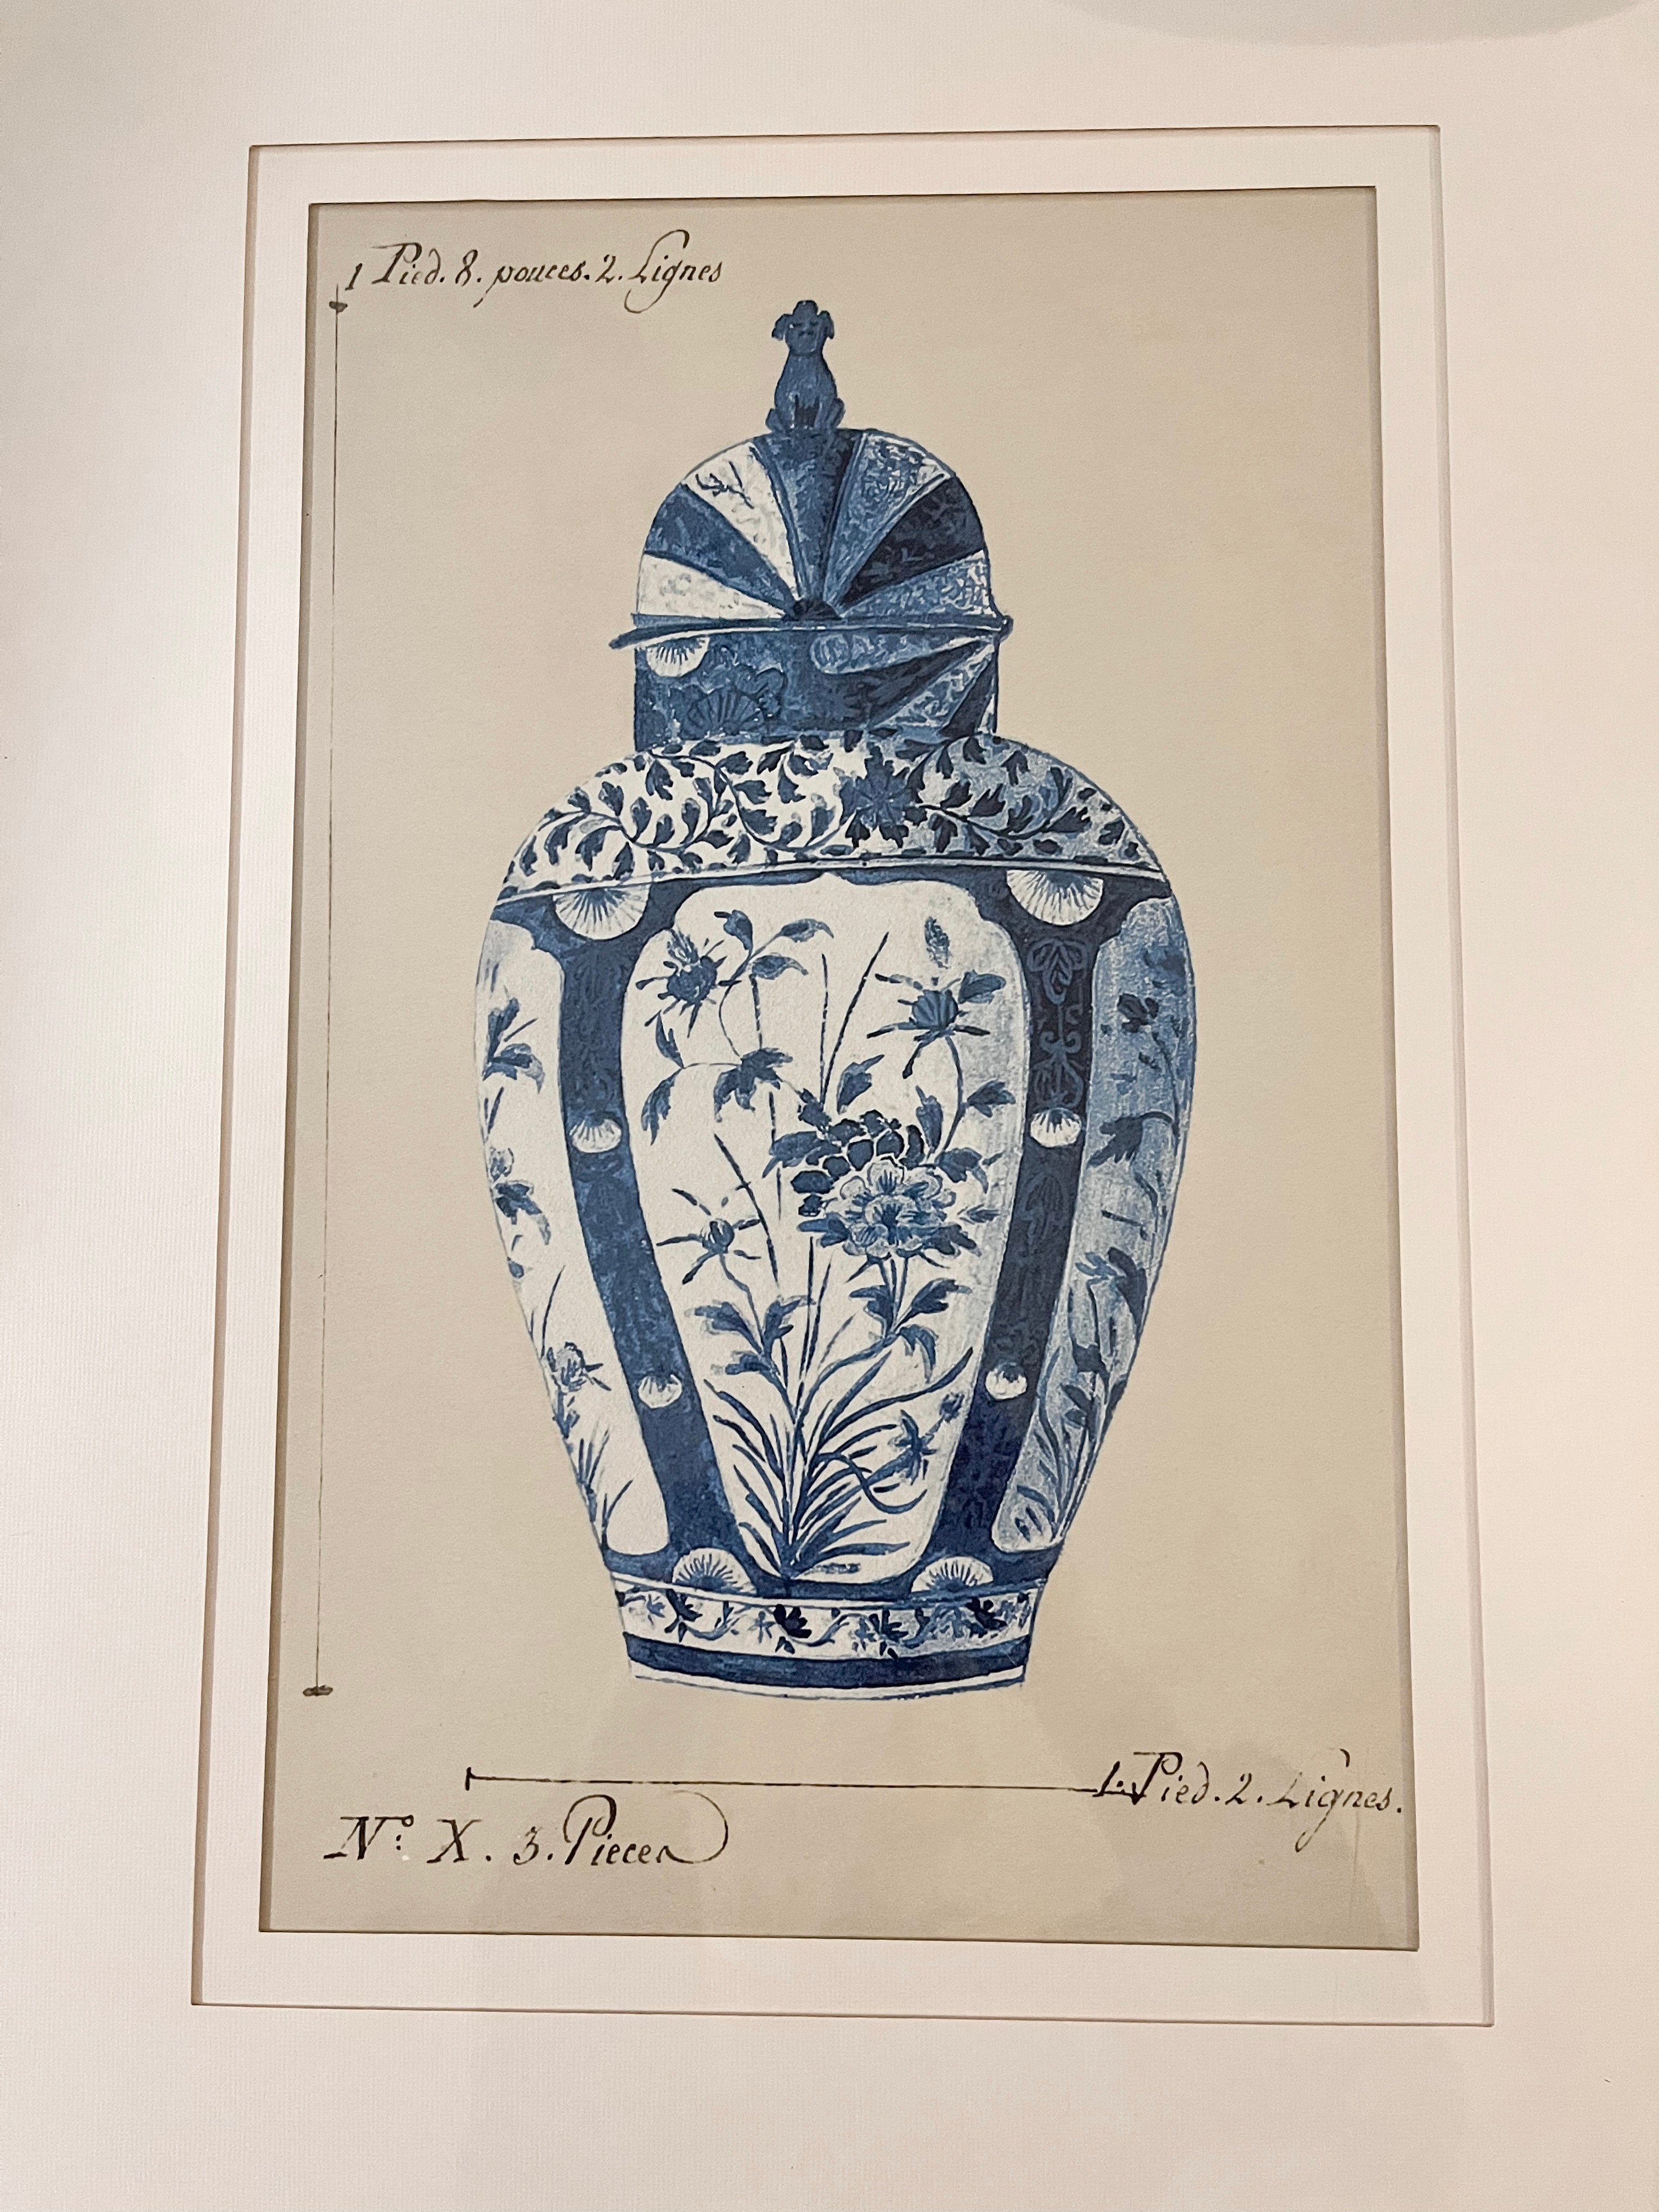 Pair of Framed Blue and White Vases Prints, 17”x22”